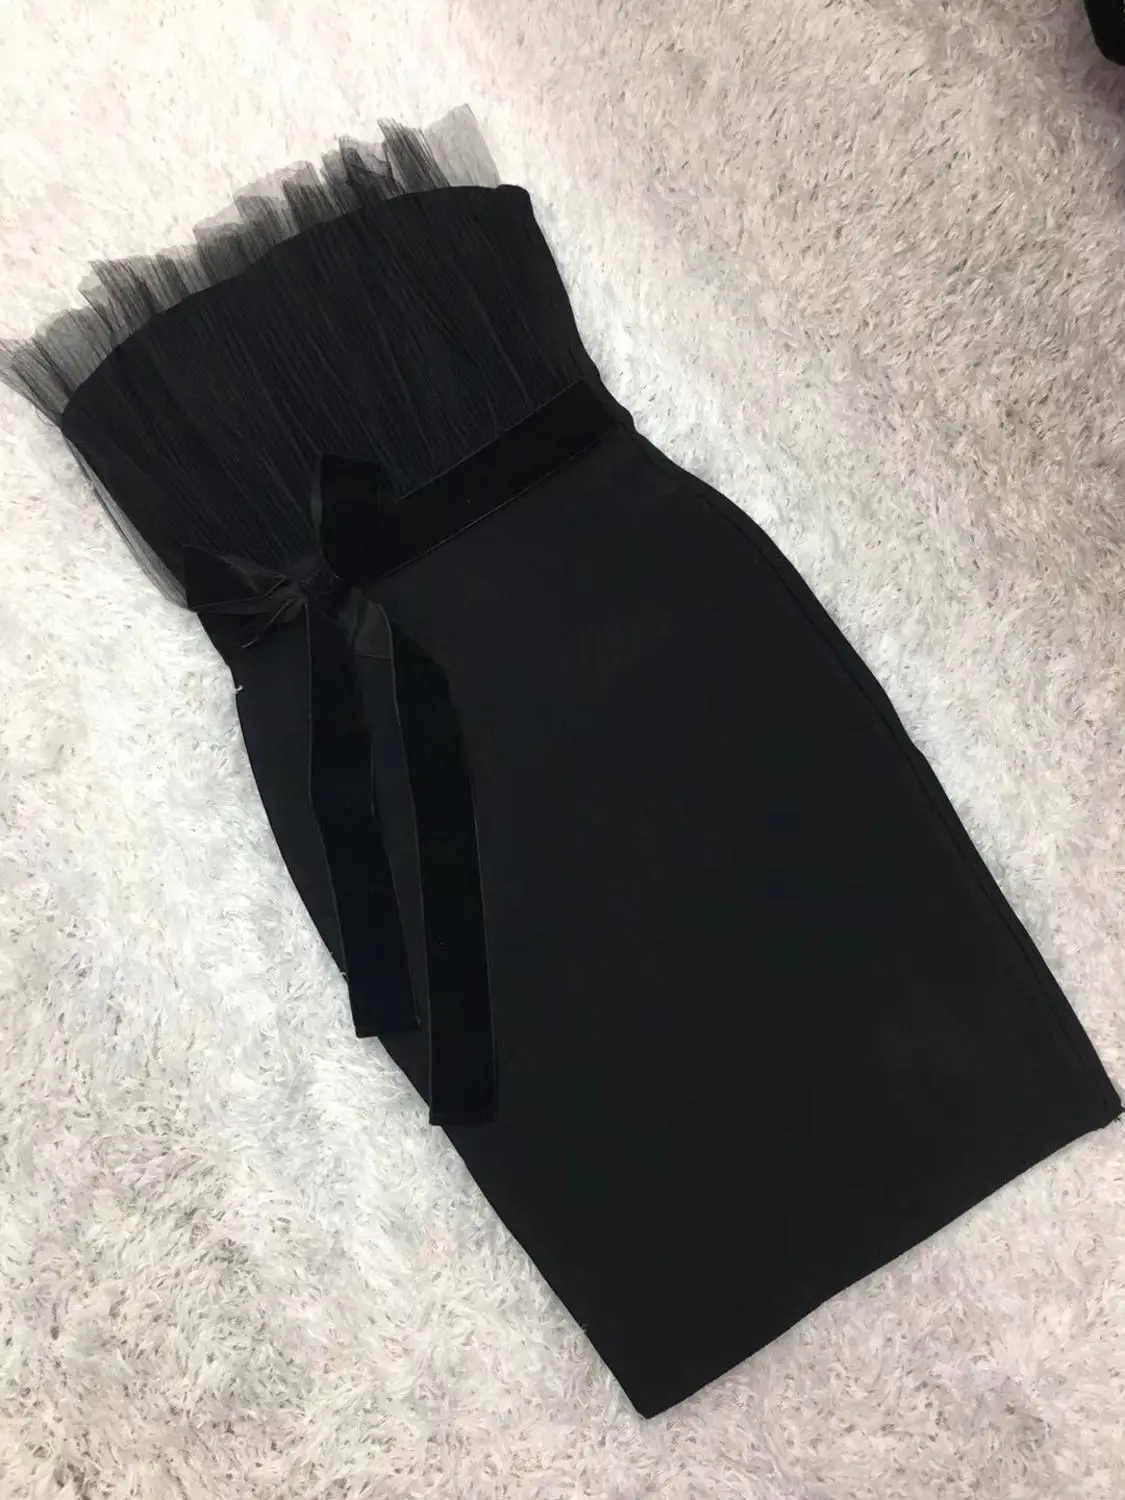 

Summer Women Rayon Fashion Sexy Strapless Sleeveless Backless Sashes Black Bandage Dress 2019 Elegant Female Mesh Party Dress